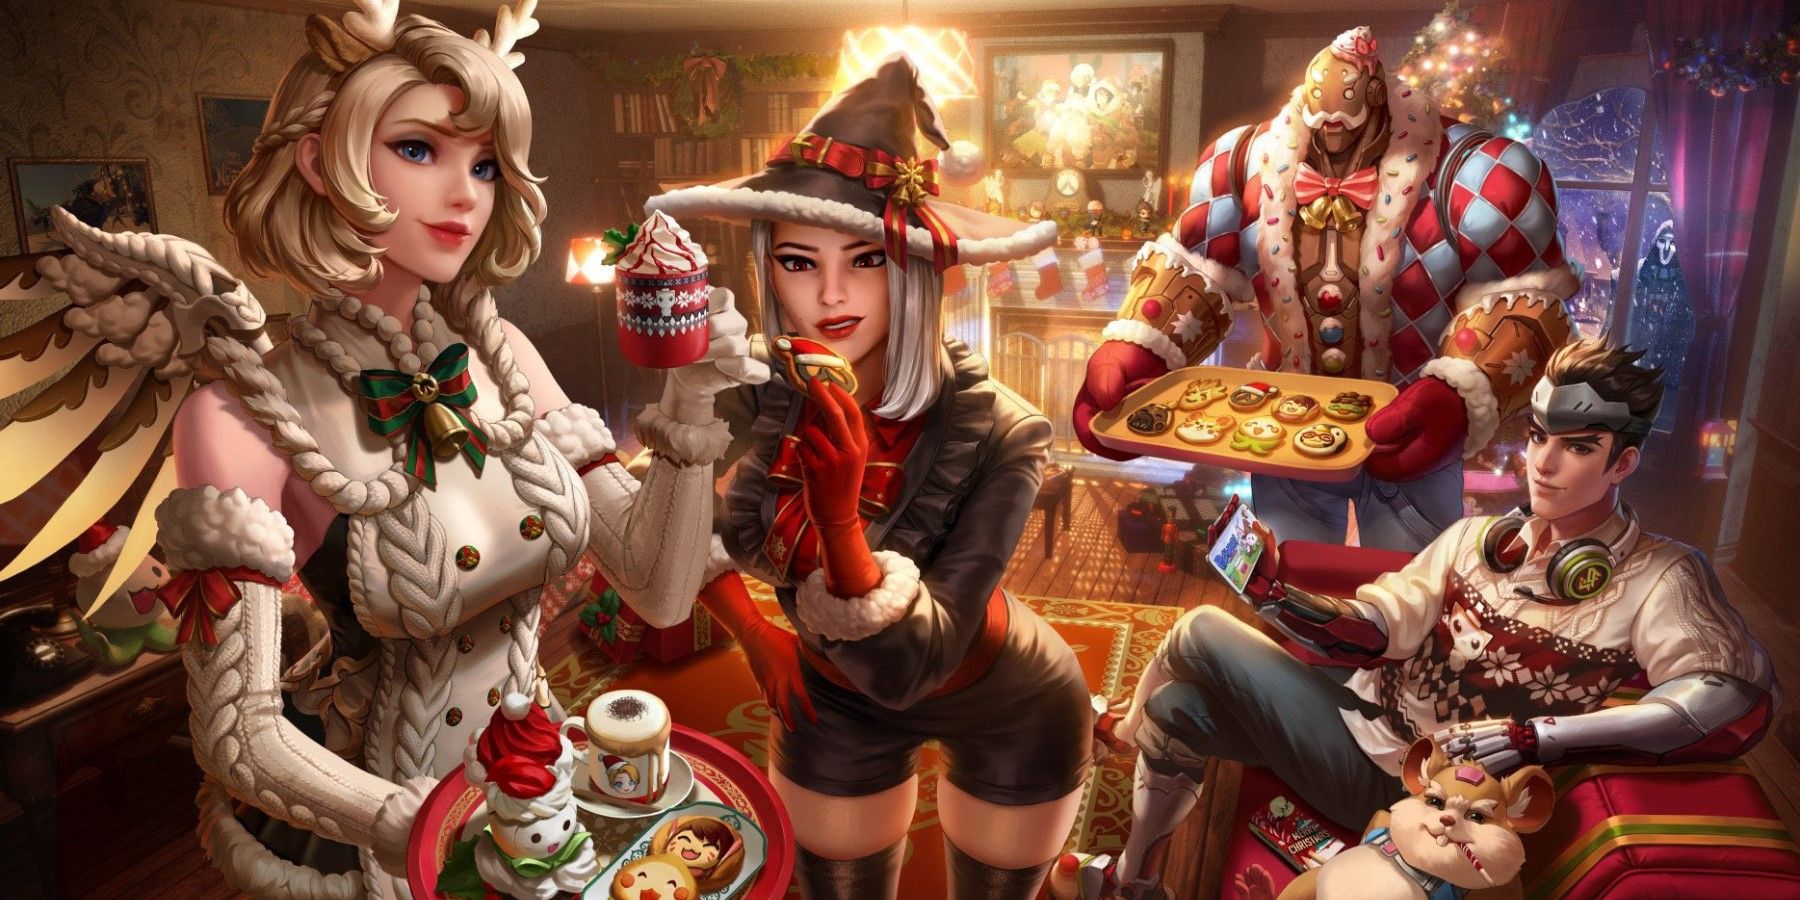 mercy, ashe, genji, hammond, and bob enjoying cookies and hot chocolate during overwatch christmas